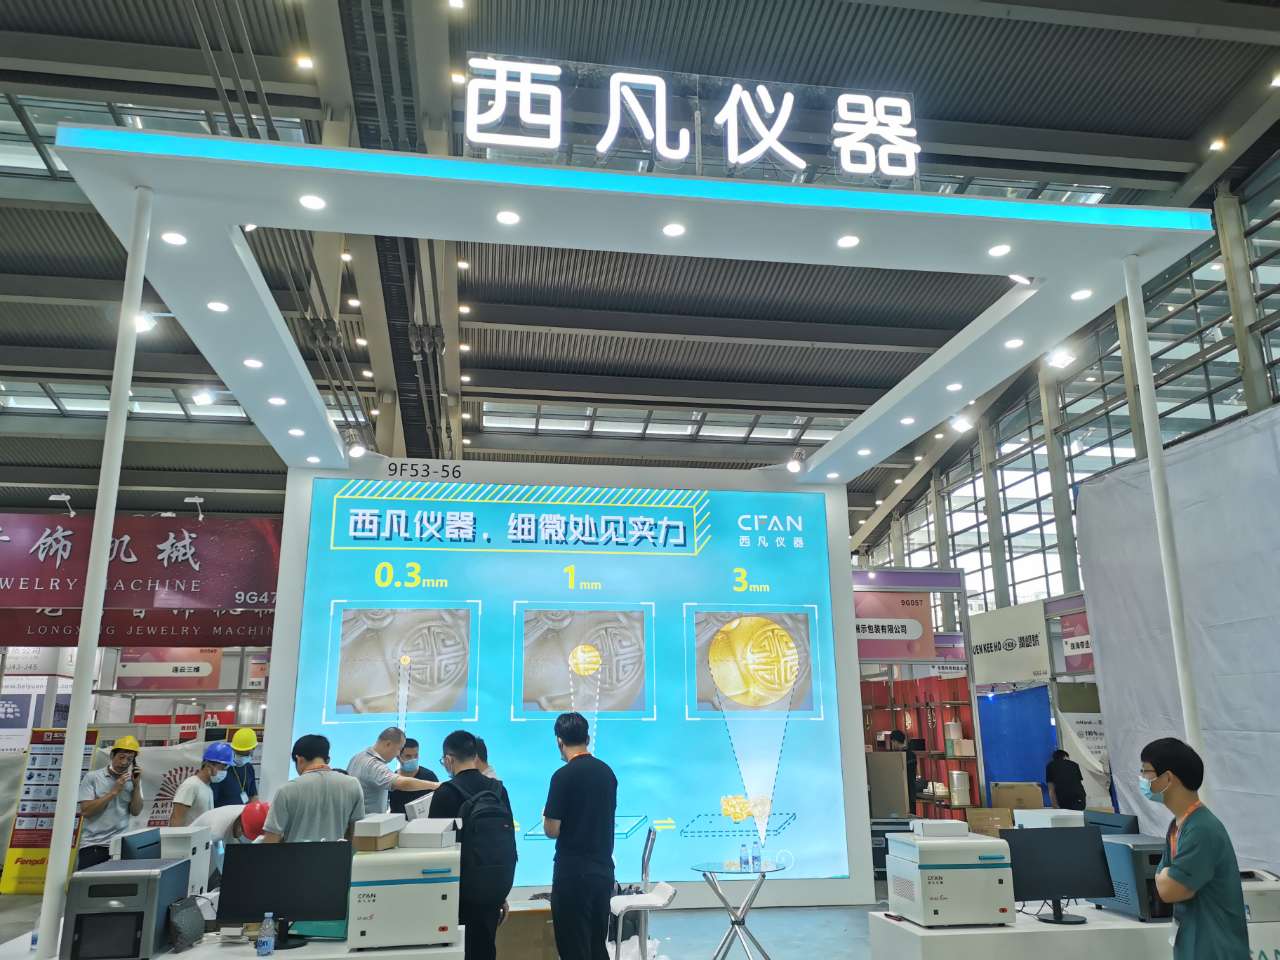 Feria Internacional de Joyería de Shenzhen (2021.9.9-13), bienvenido a visitar el stand de CFAN.